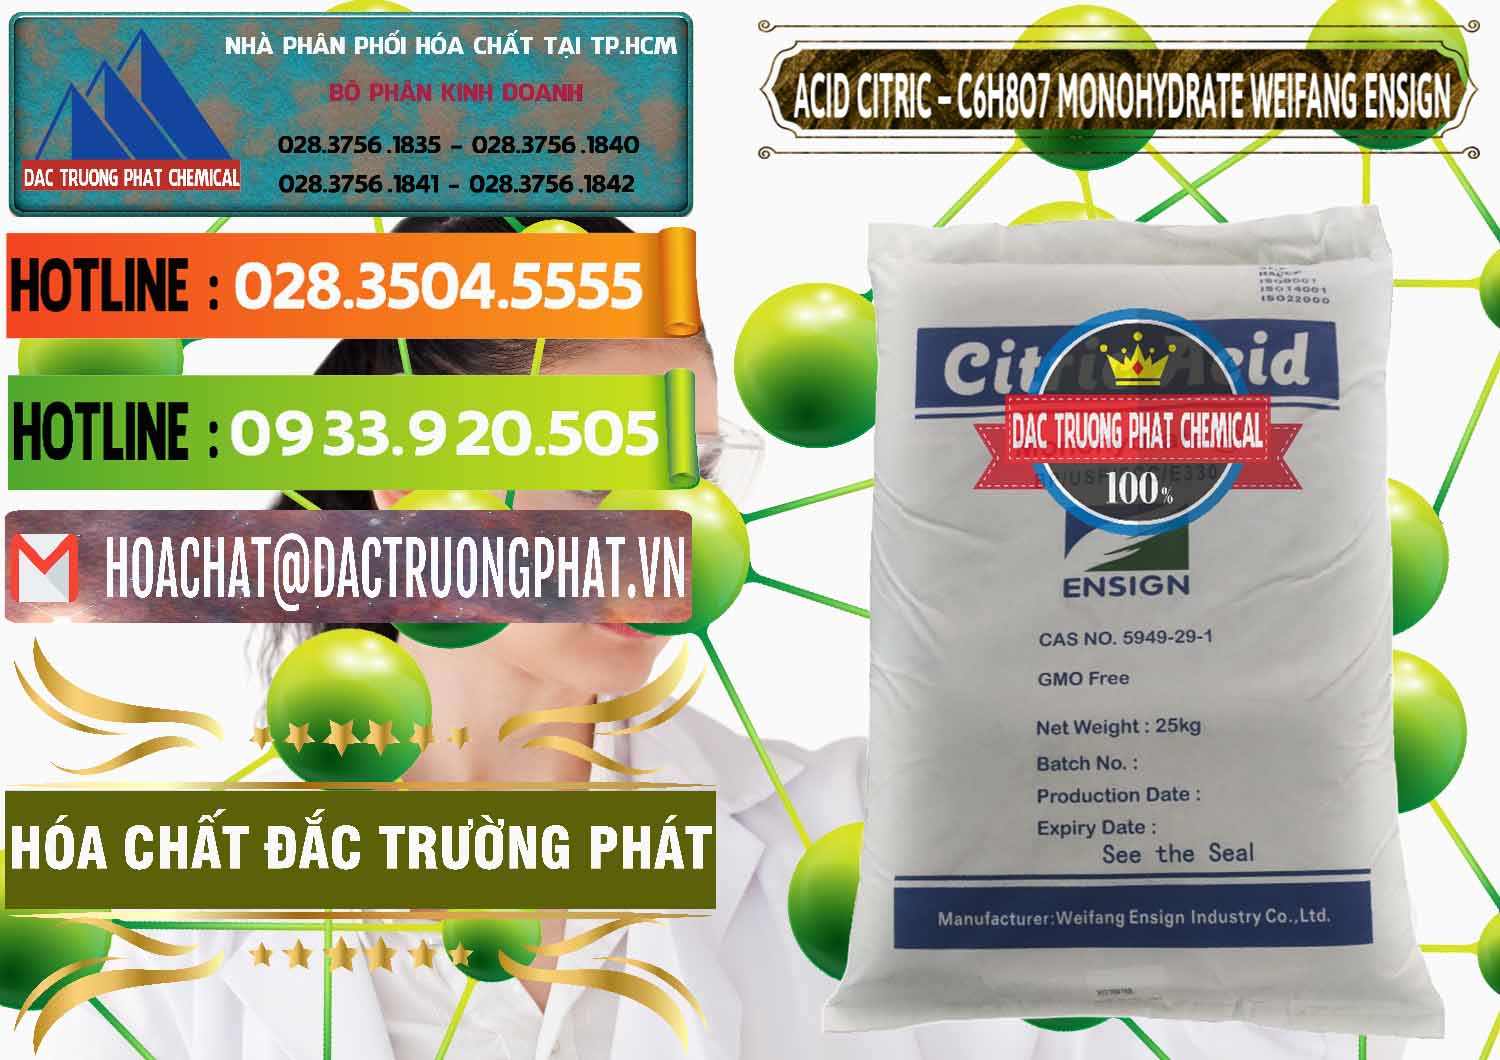 Chuyên bán & cung ứng Acid Citric - Axit Citric Monohydrate Weifang Trung Quốc China - 0009 - Đơn vị kinh doanh ( cung cấp ) hóa chất tại TP.HCM - cungcaphoachat.com.vn